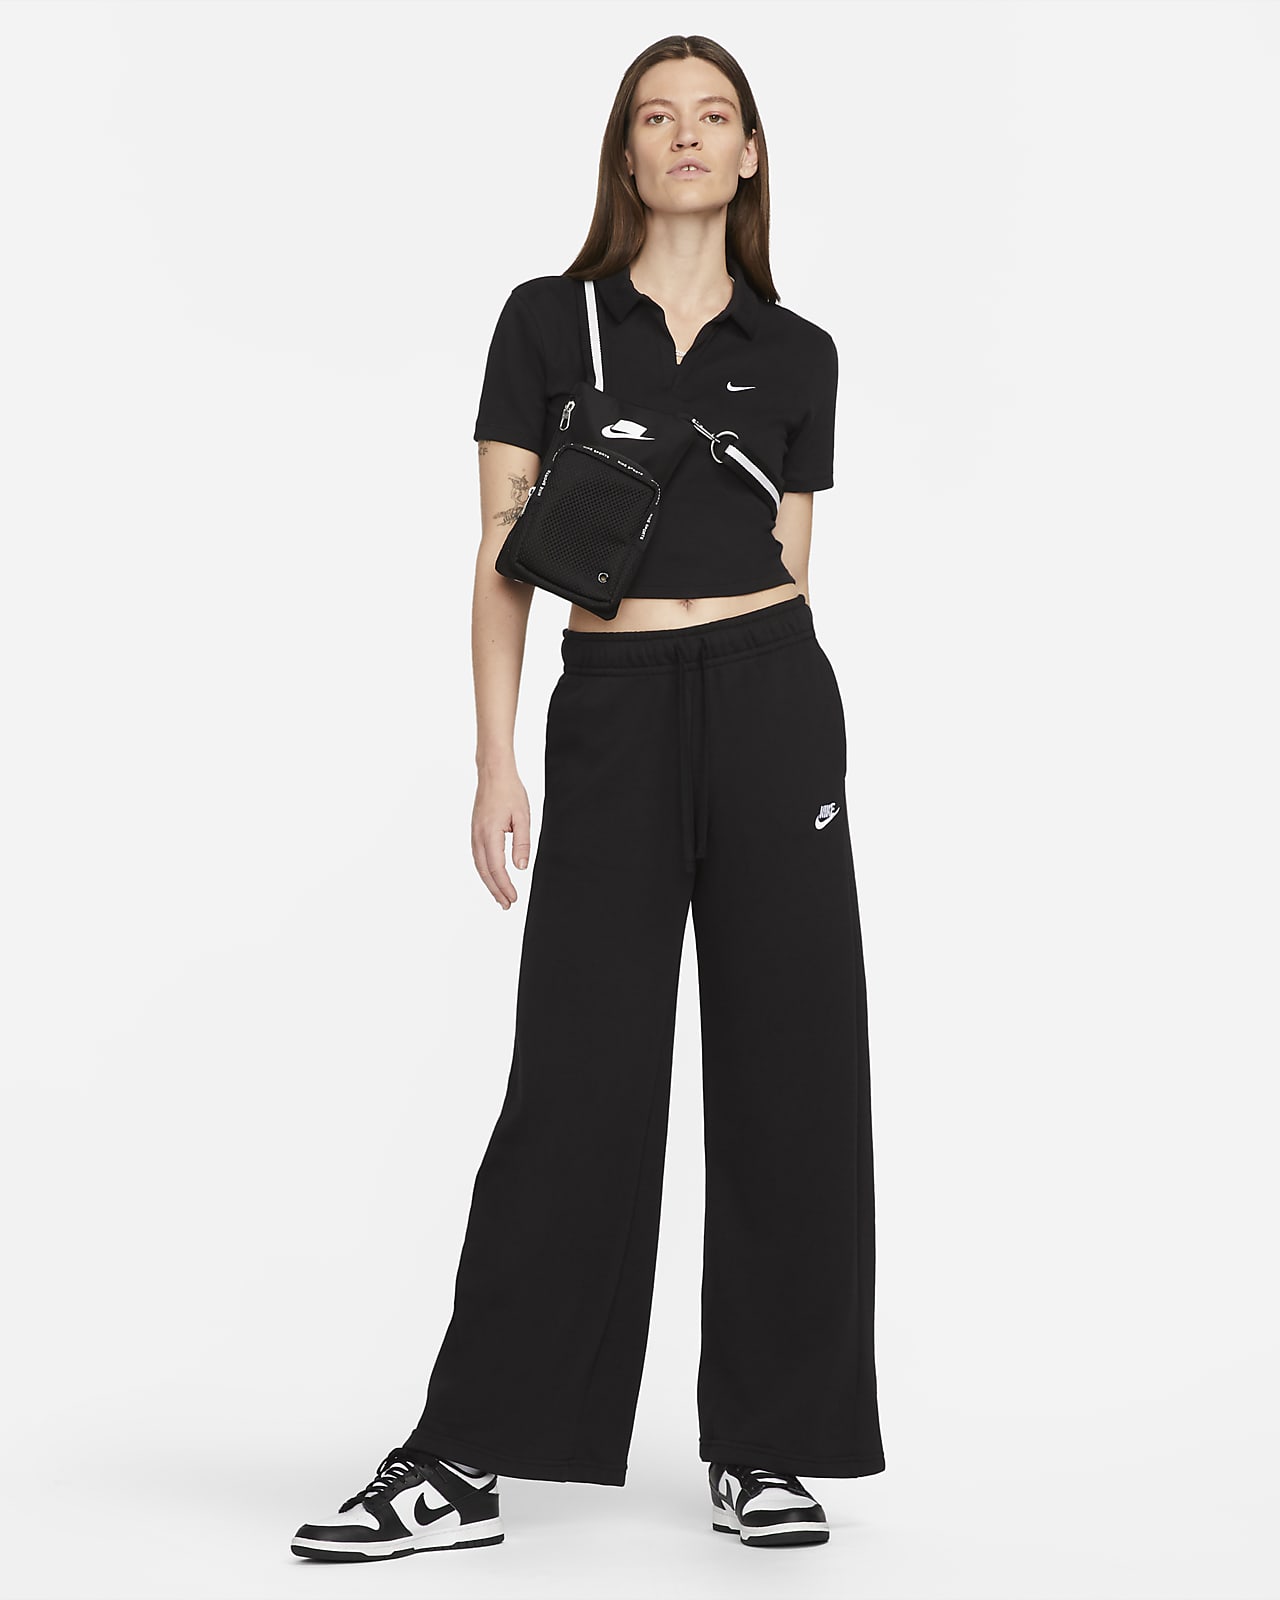 Nike Sweatpants Womens Large Black & White Running Lounge Zip Legs